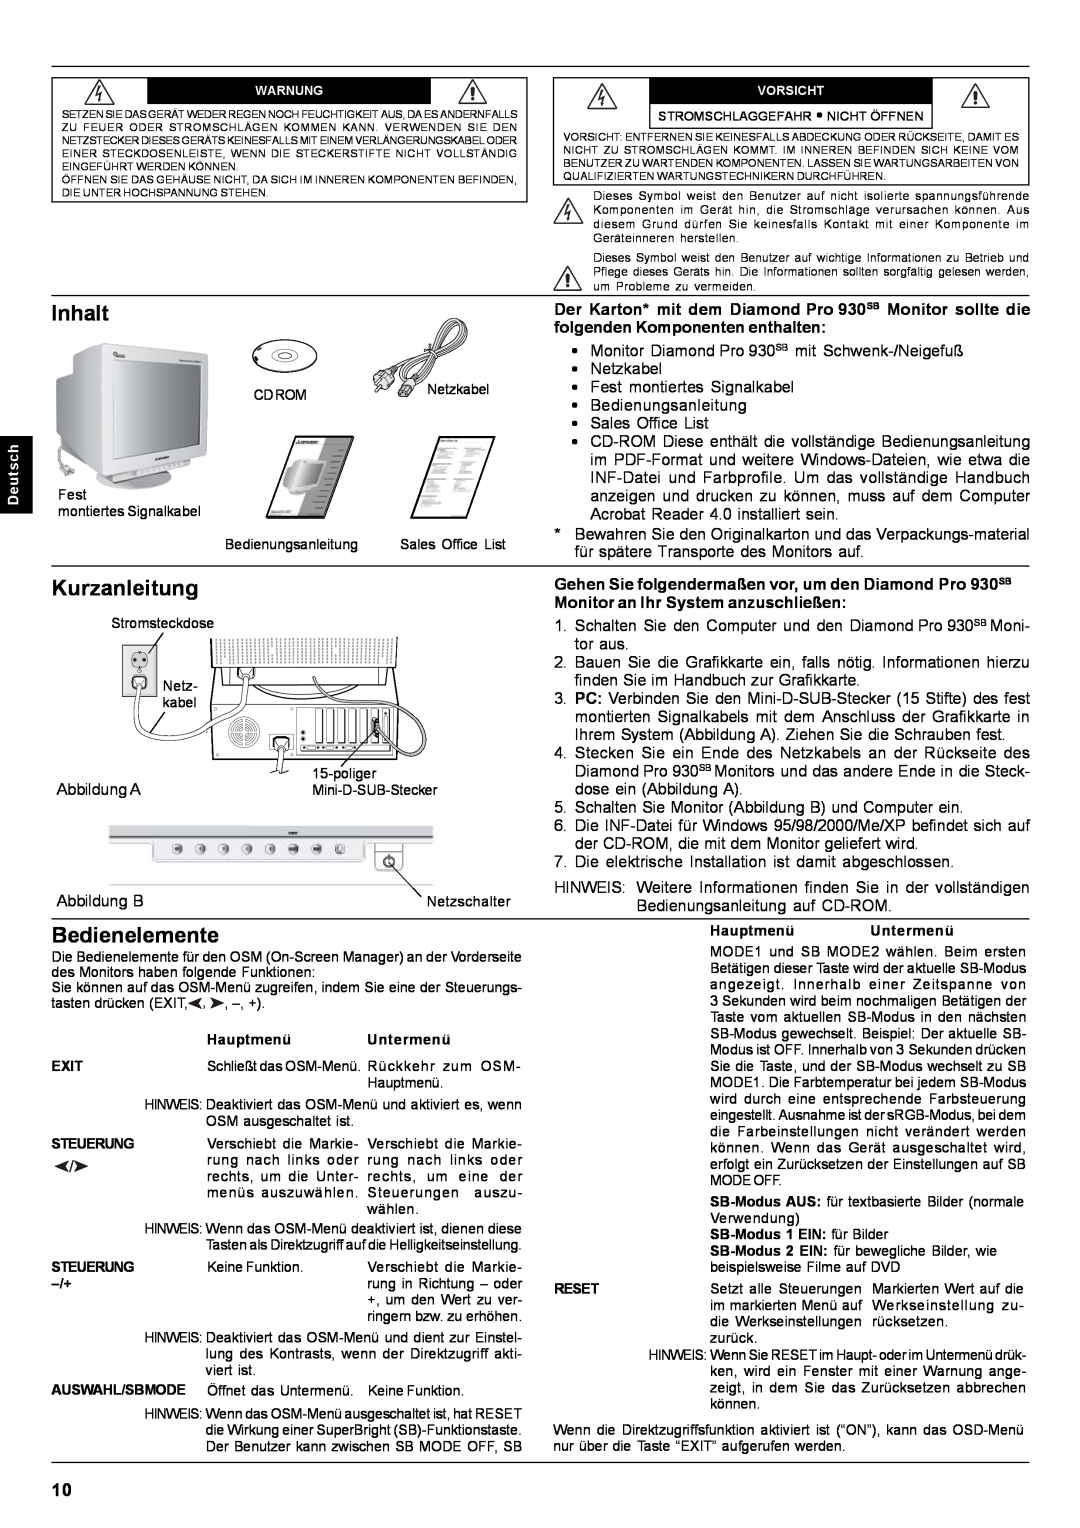 Mitsubishi Electronics Pro 930SB user manual Inhalt, Kurzanleitung, Bedienelemente, Monitor an Ihr System anzuschließen 